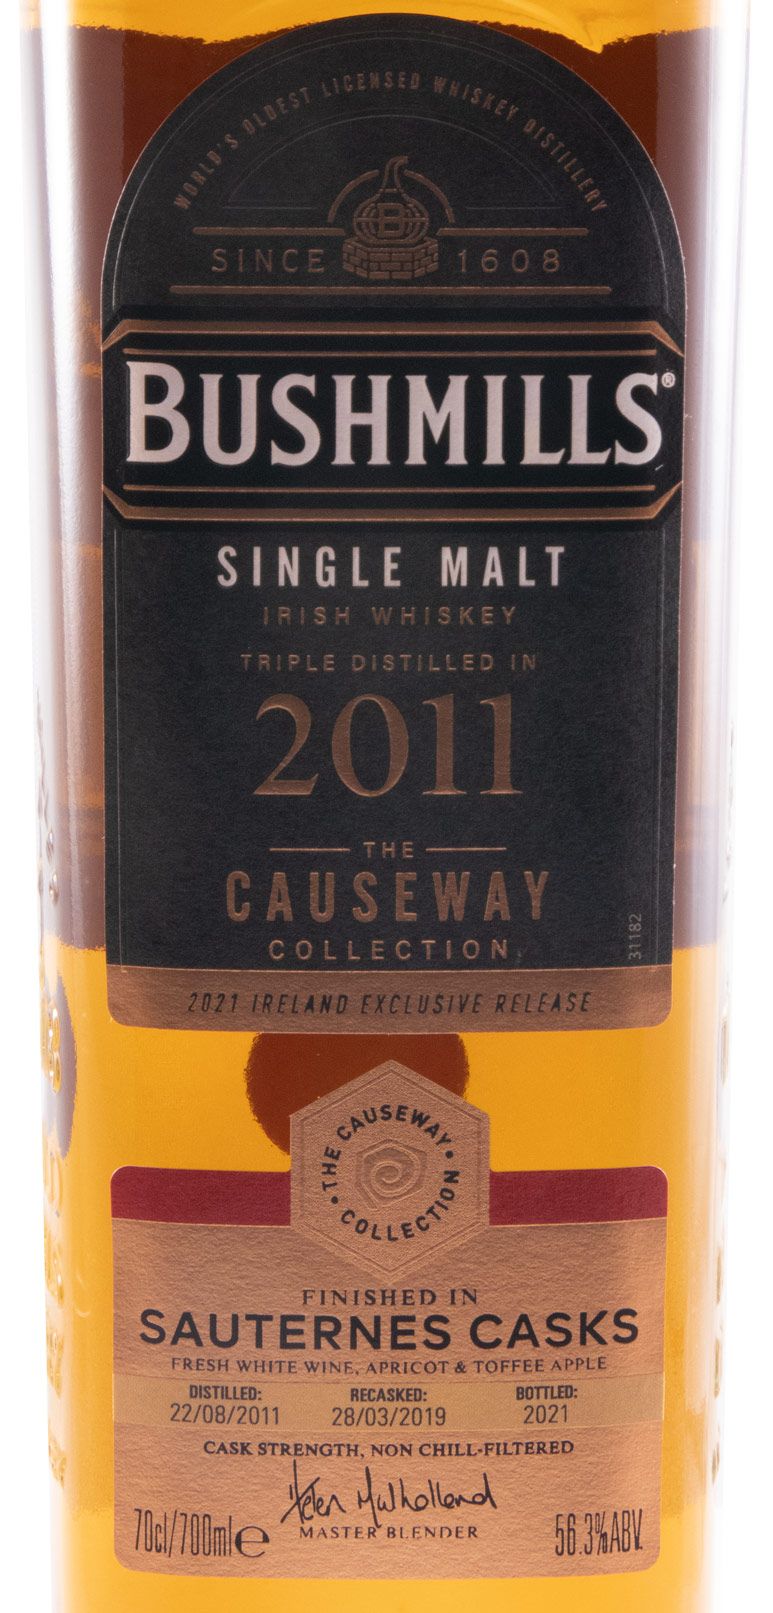 2011 Bushmills The Causeway Collection Sauternes Casks Single Malt